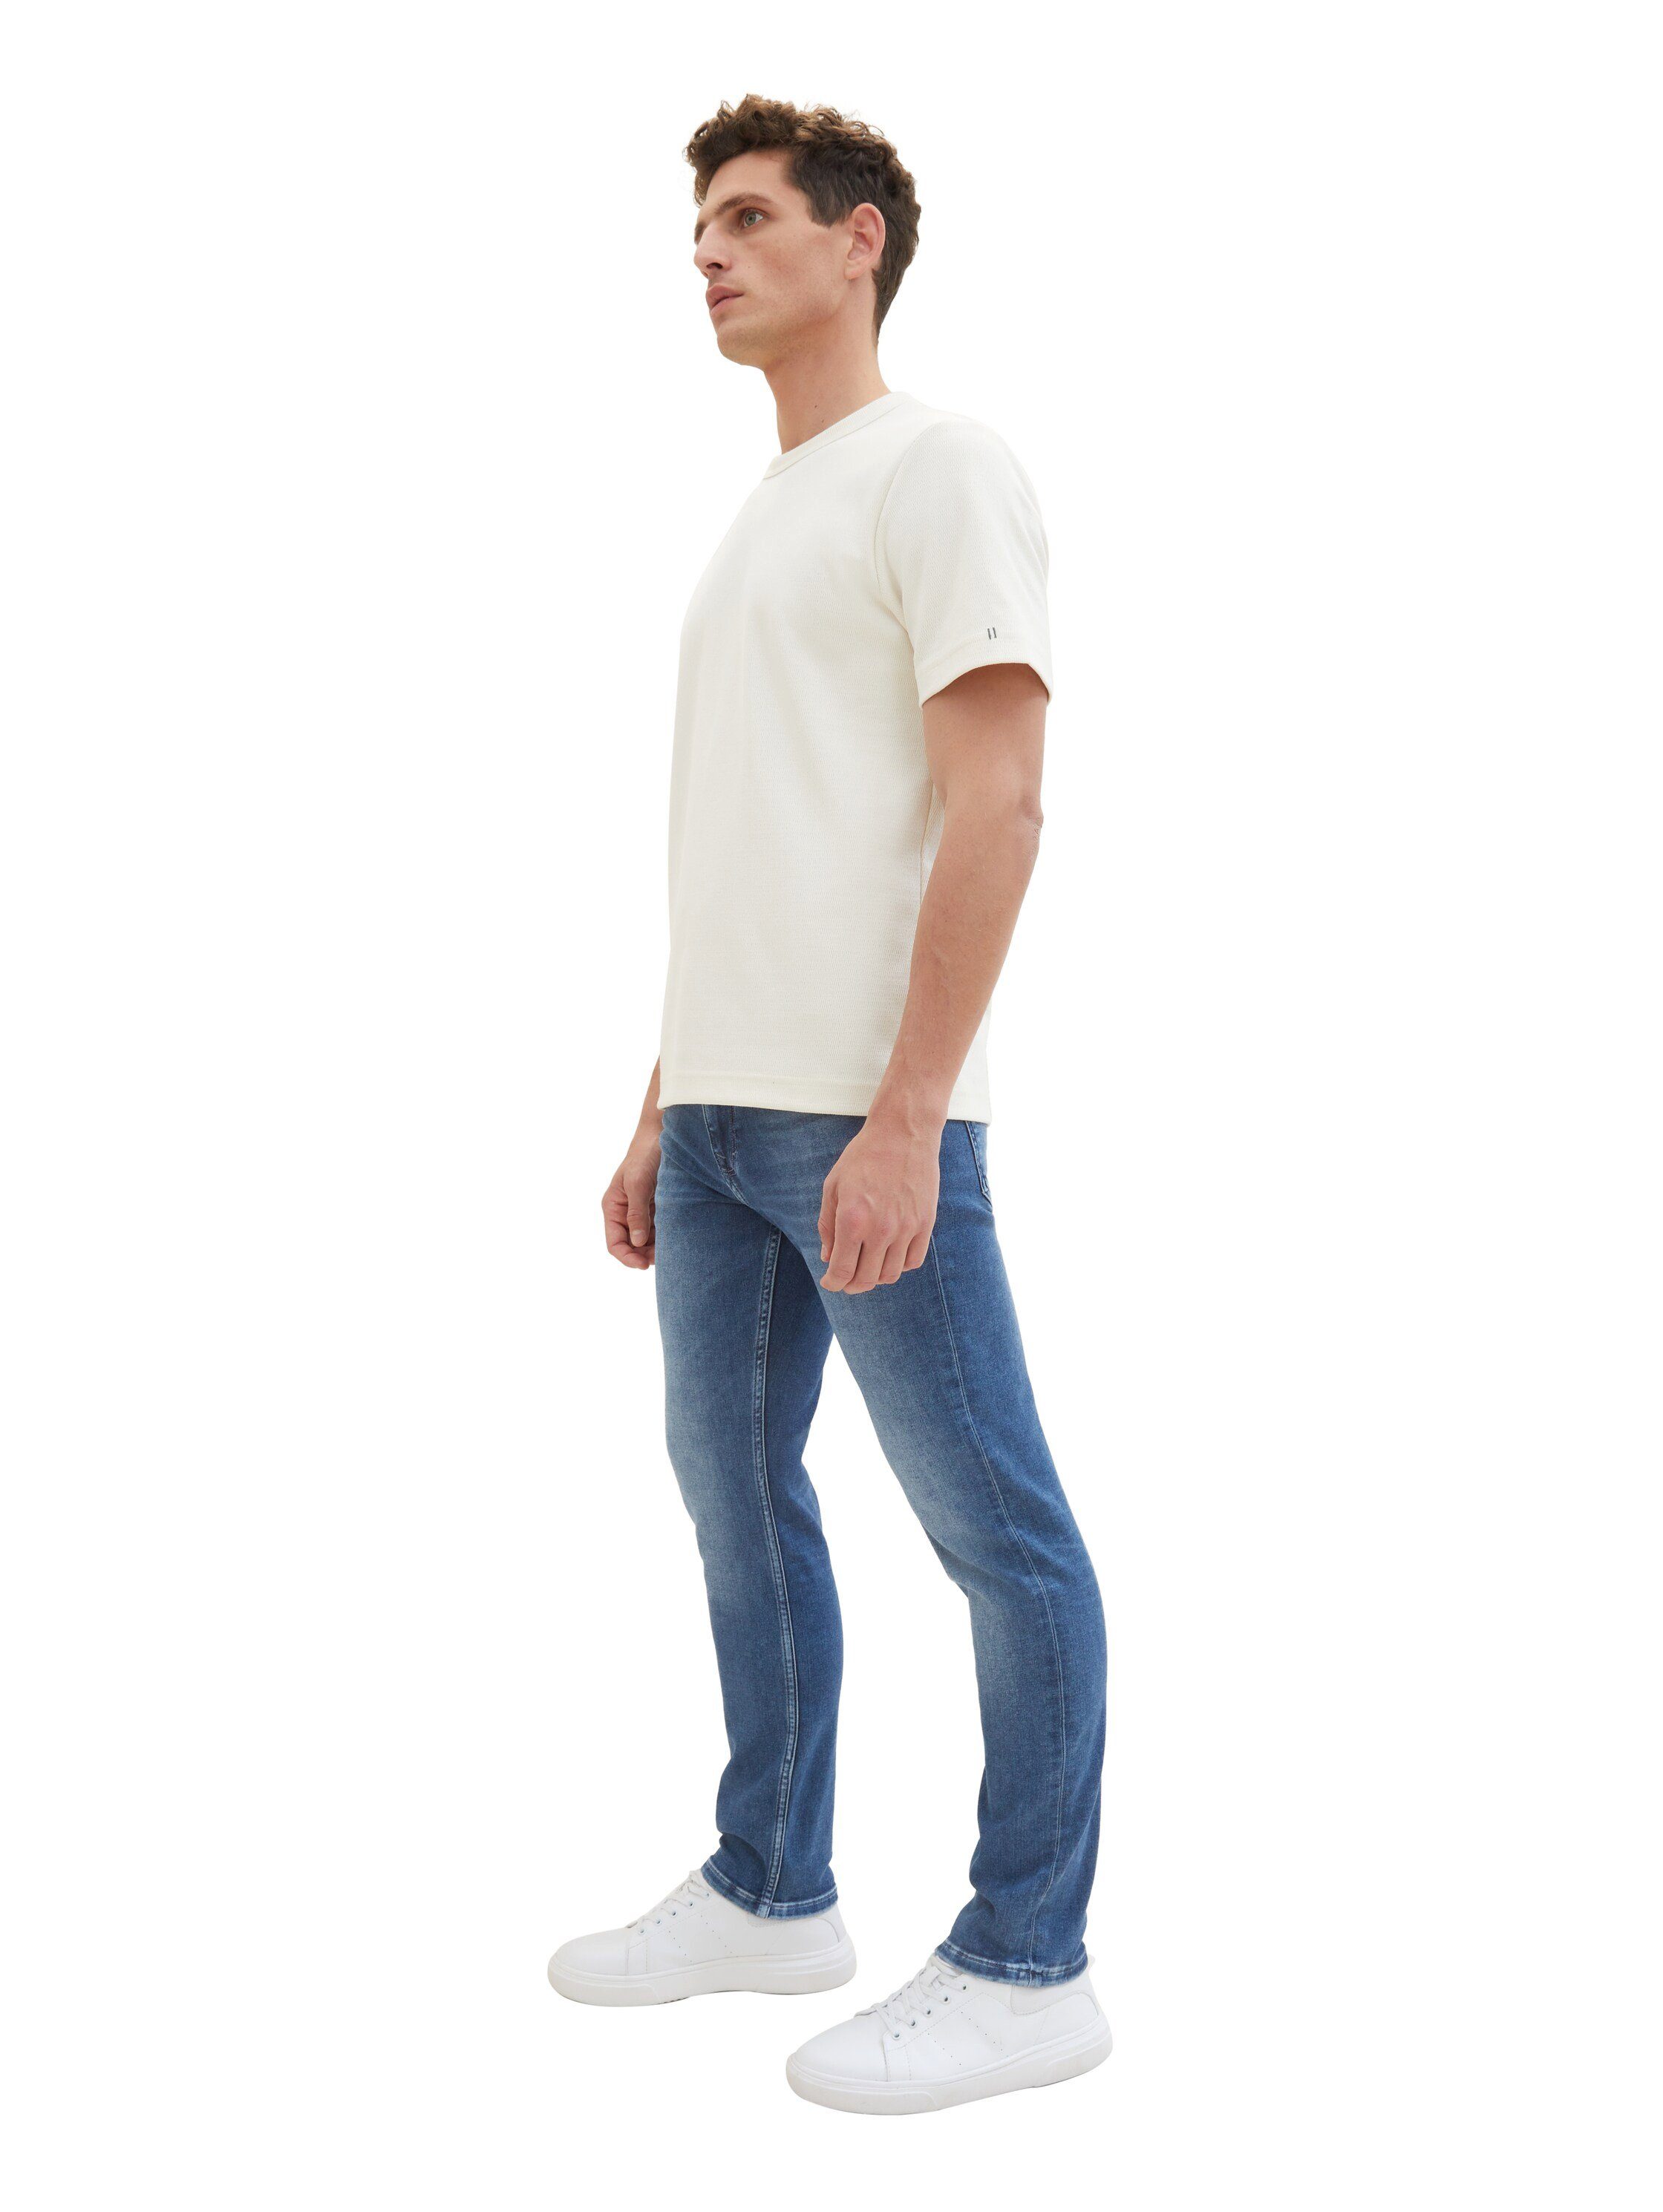 Tom Tailor 5-pocket jeans 5-pocket stijl